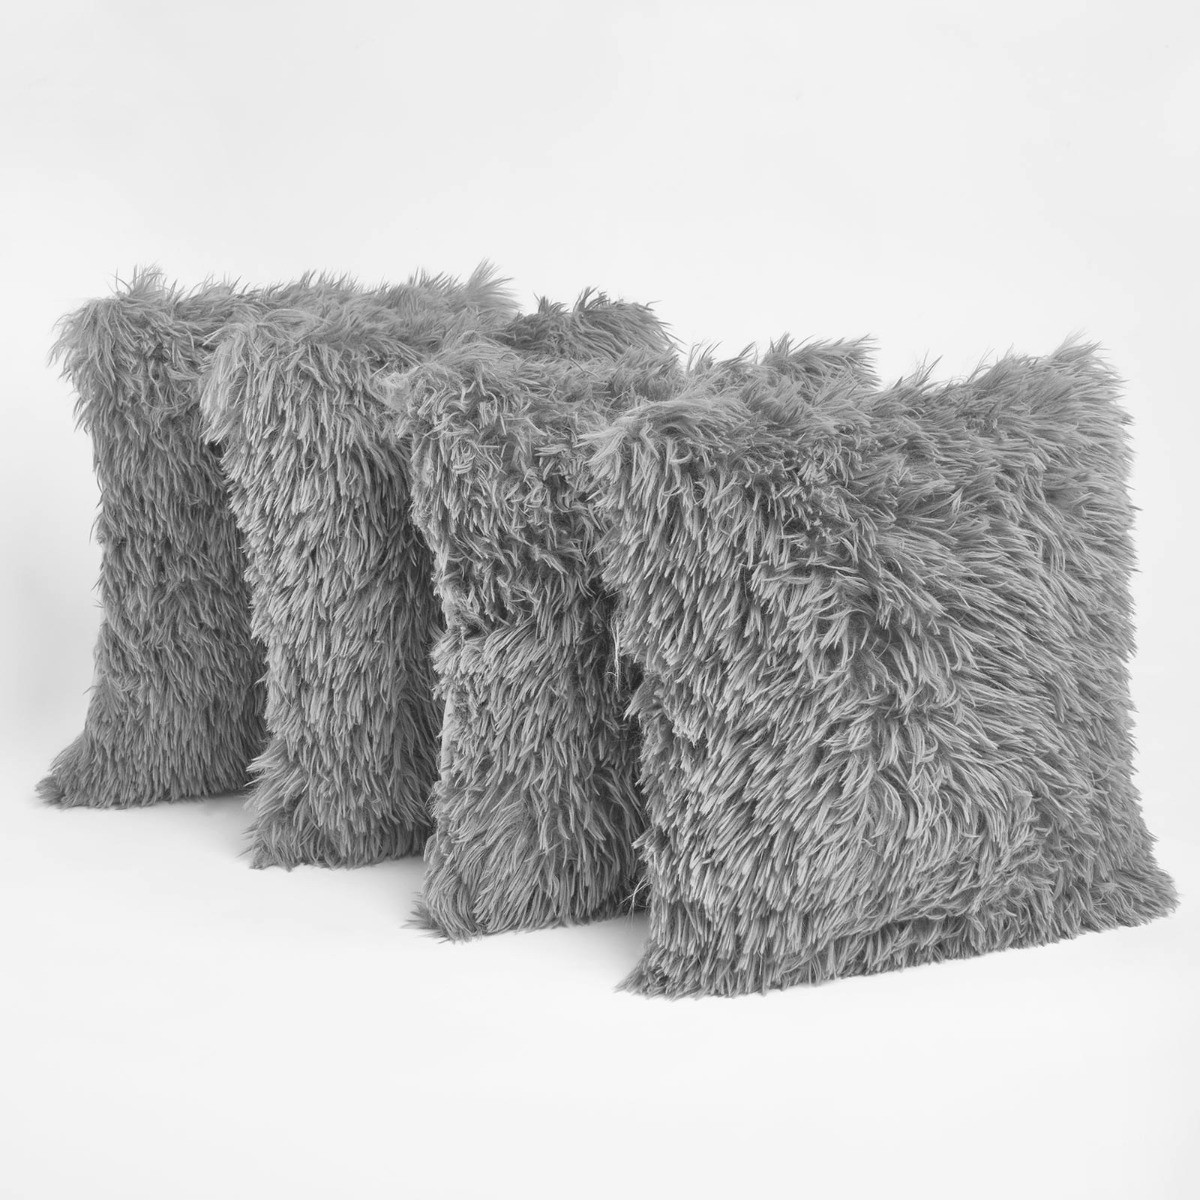 Sienna 4 Pack Faux Mongolian Fur Cushion Covers, Silver - 55 x 55cm>